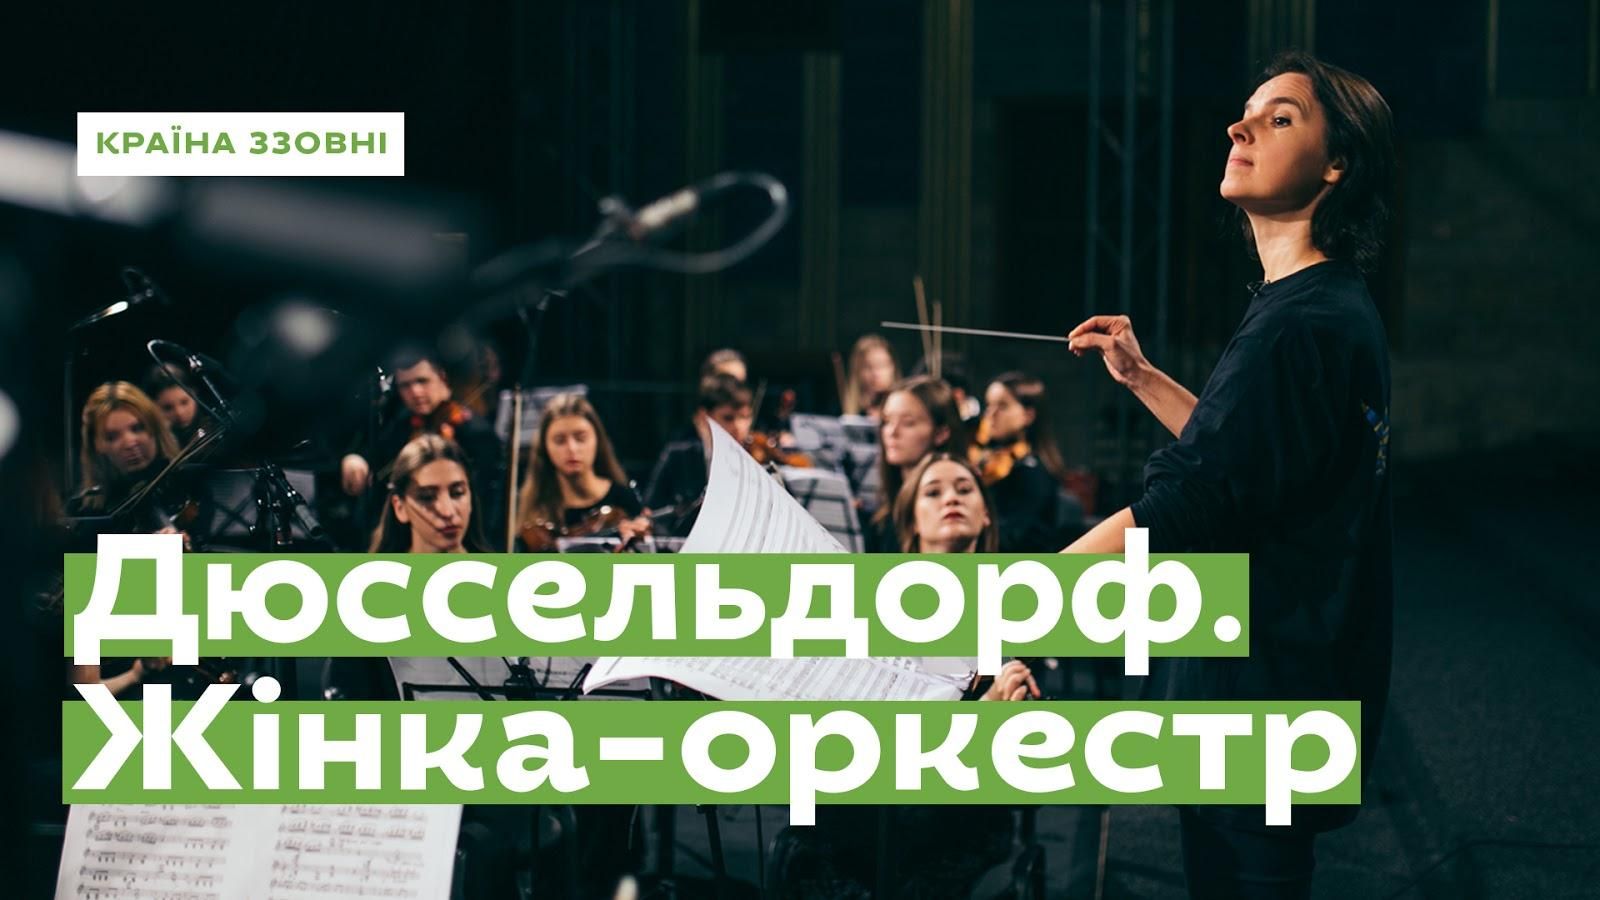 Украинка станет диригенткою известного фестиваля: история Ukraиner